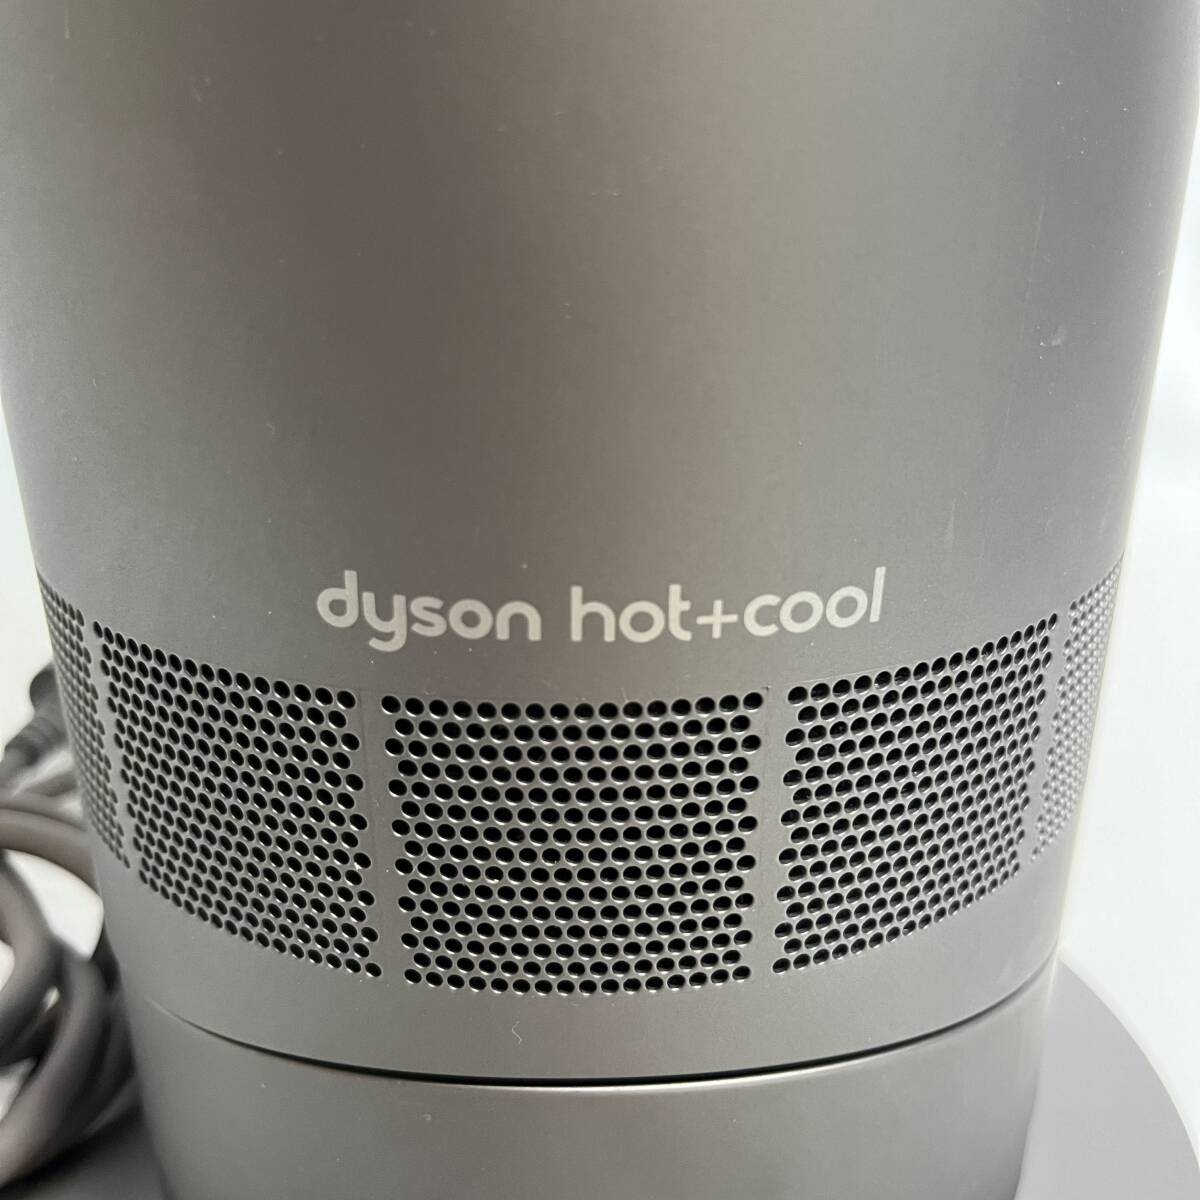 [ кондиционер машина ] работа OK Dyson dyson hot+cool AM09 керамика тепловентилятор 2015 год производства дистанционный пульт нет 